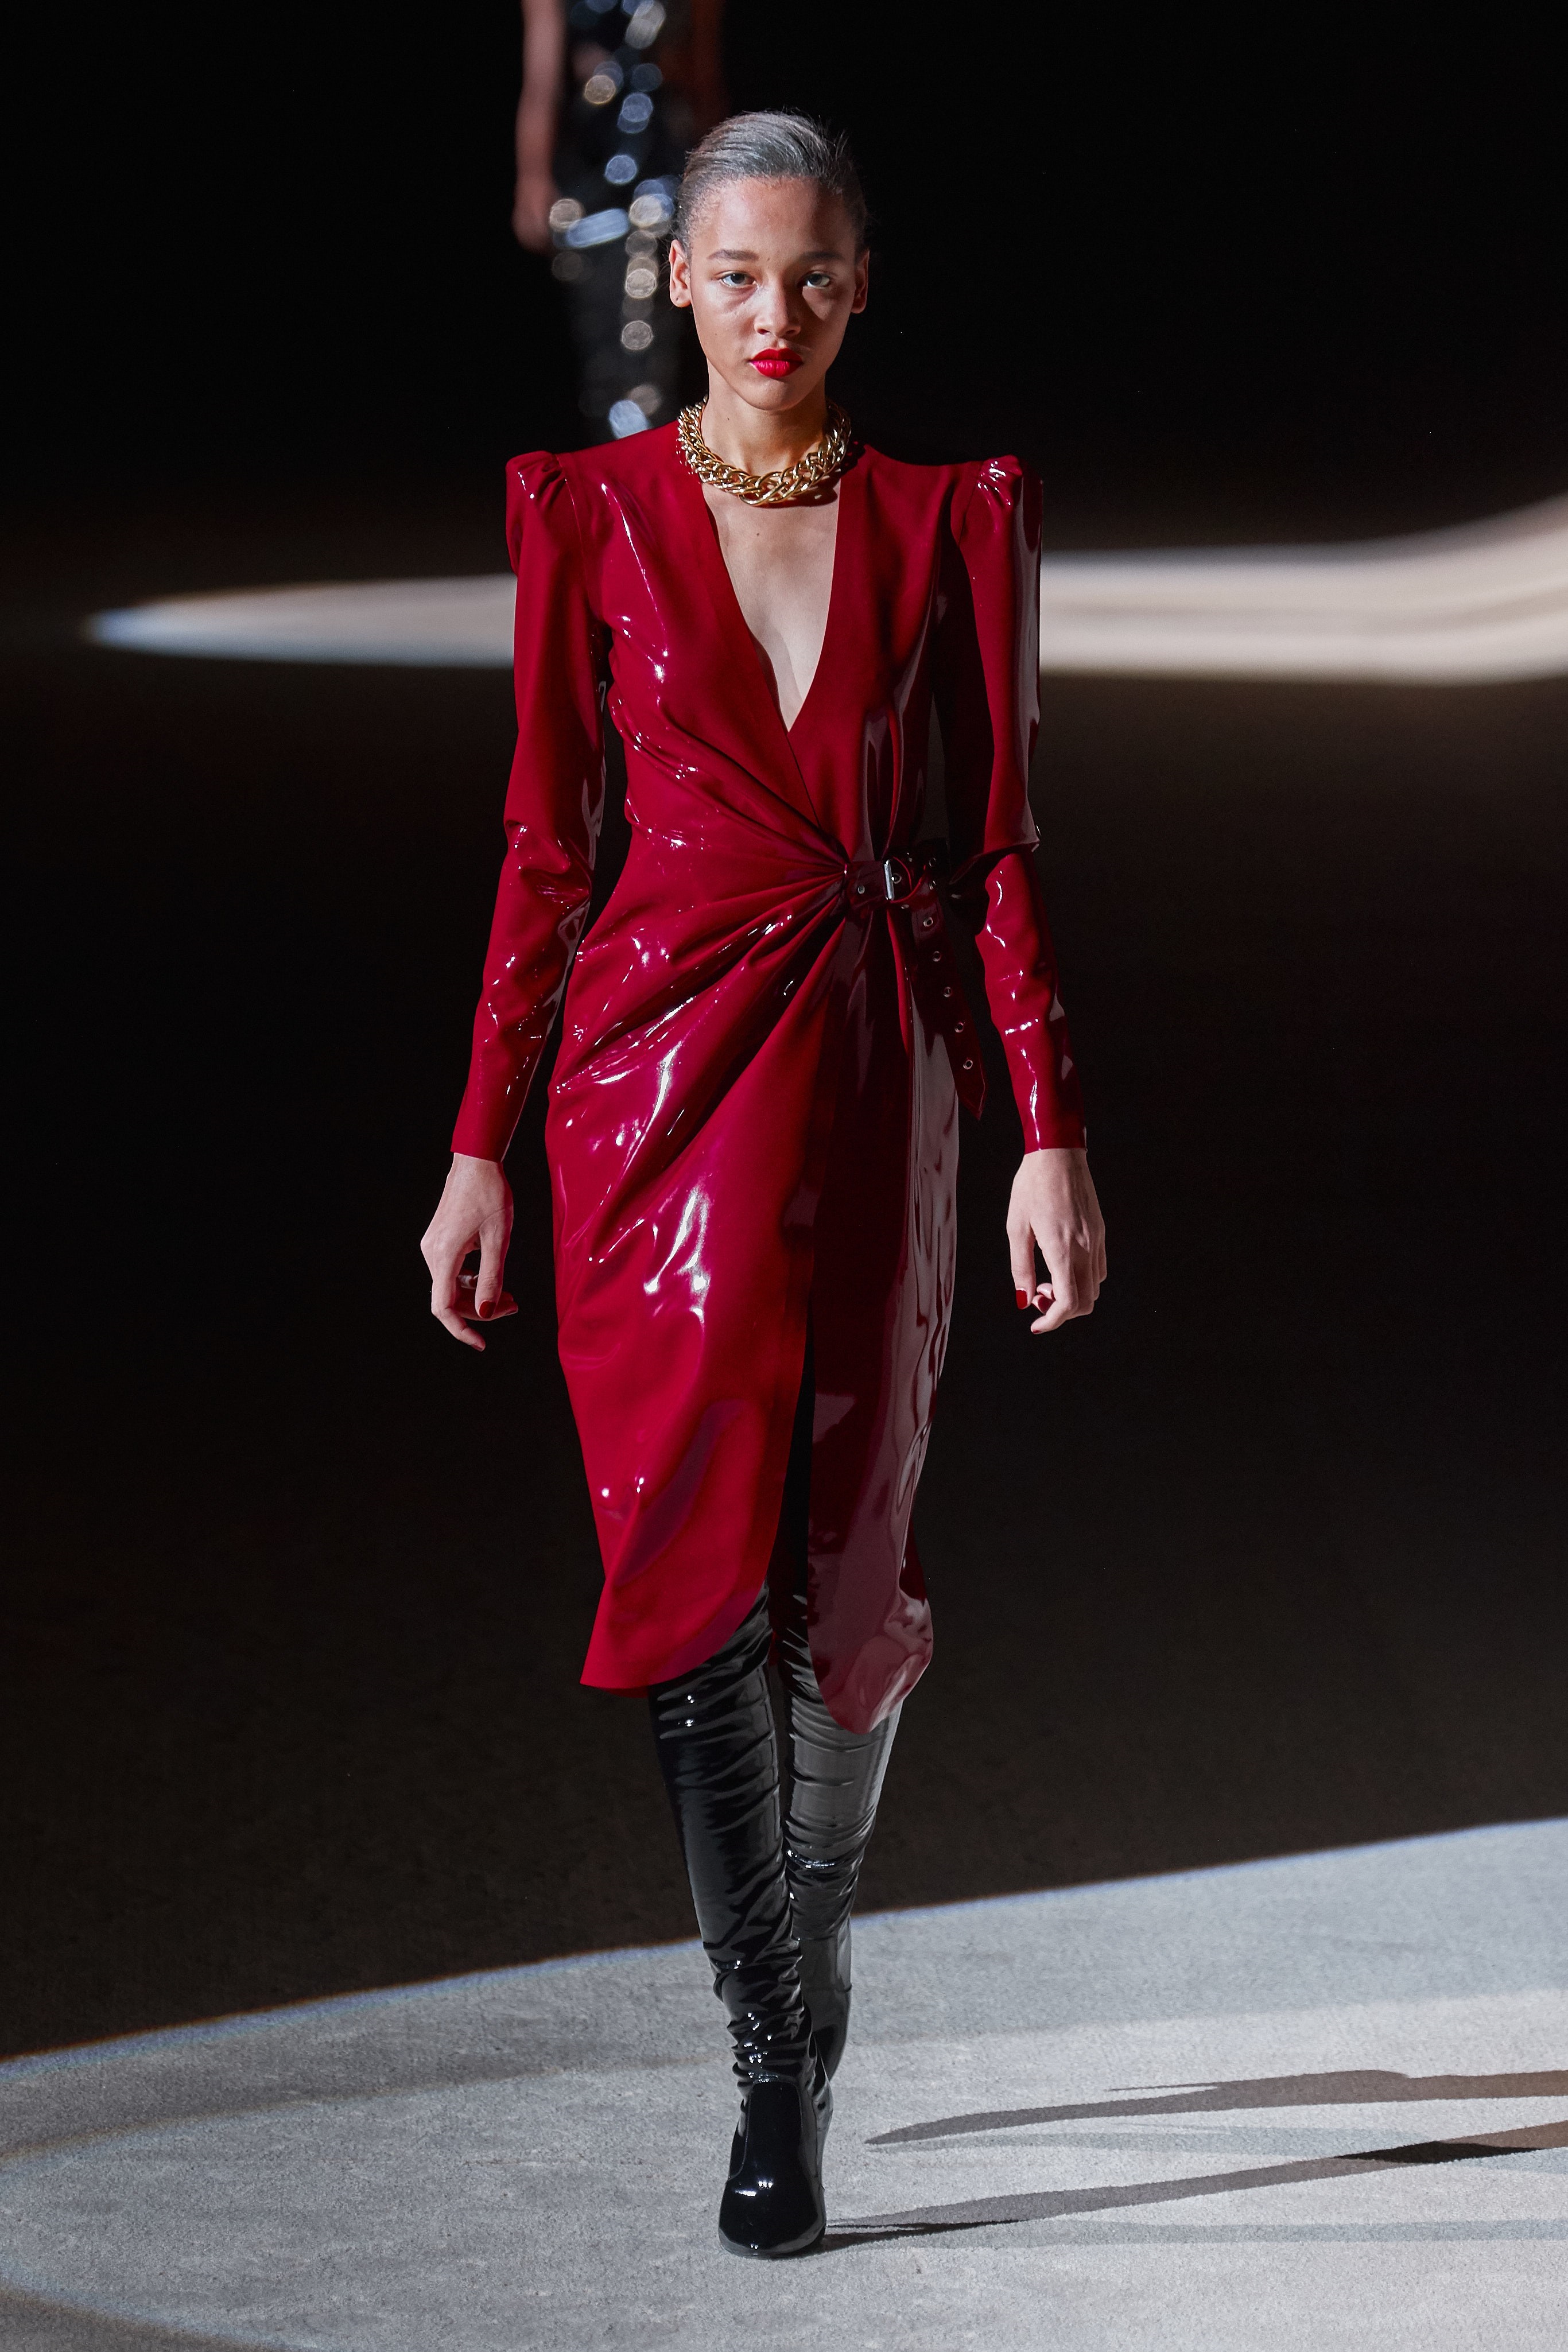 Thời trang nữ quyền của Dior tại Paris Fashion Week - 10